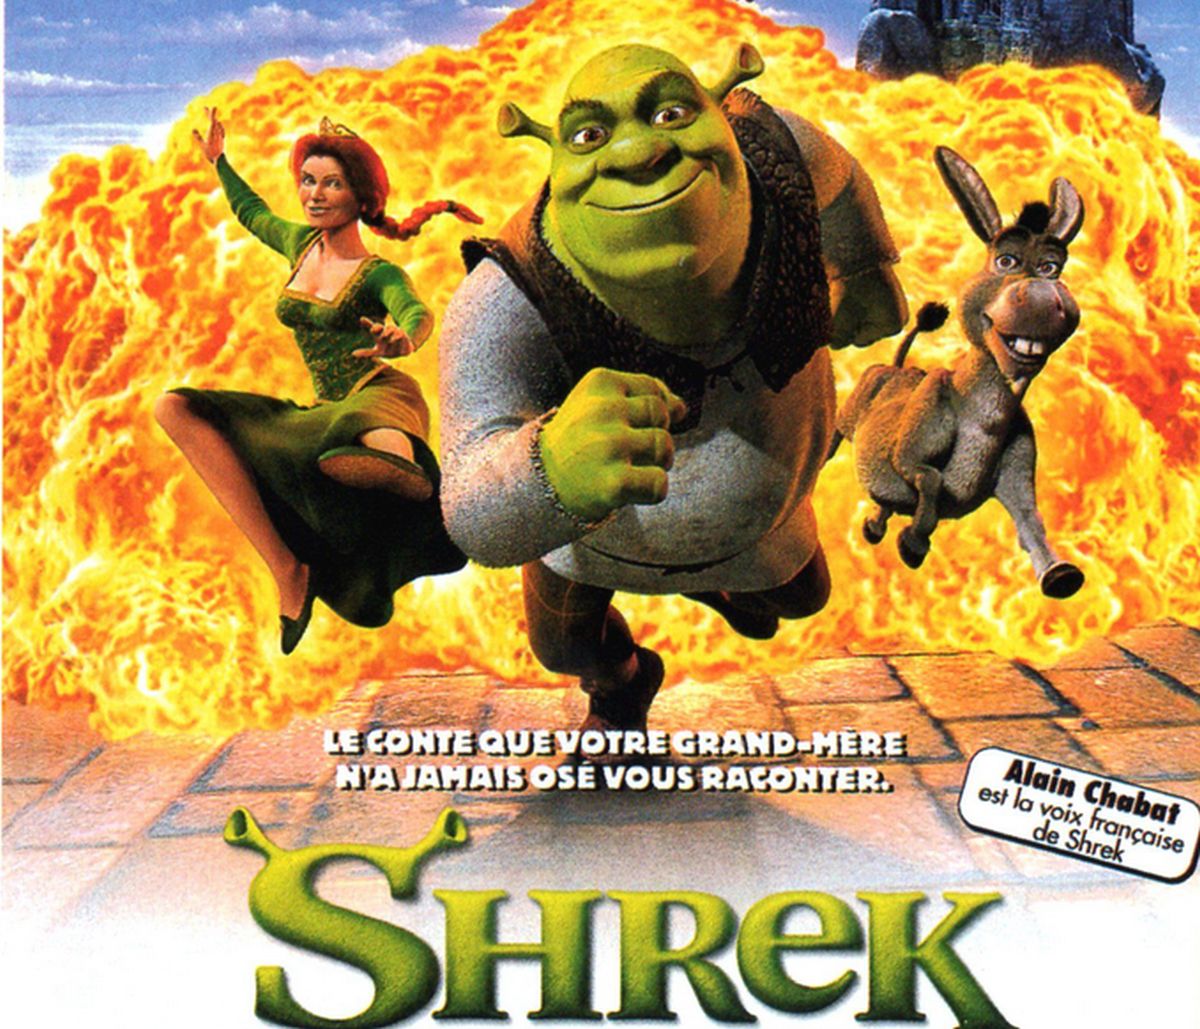  Shrek 5 : Antonio Banderas annonce un cinquième volet